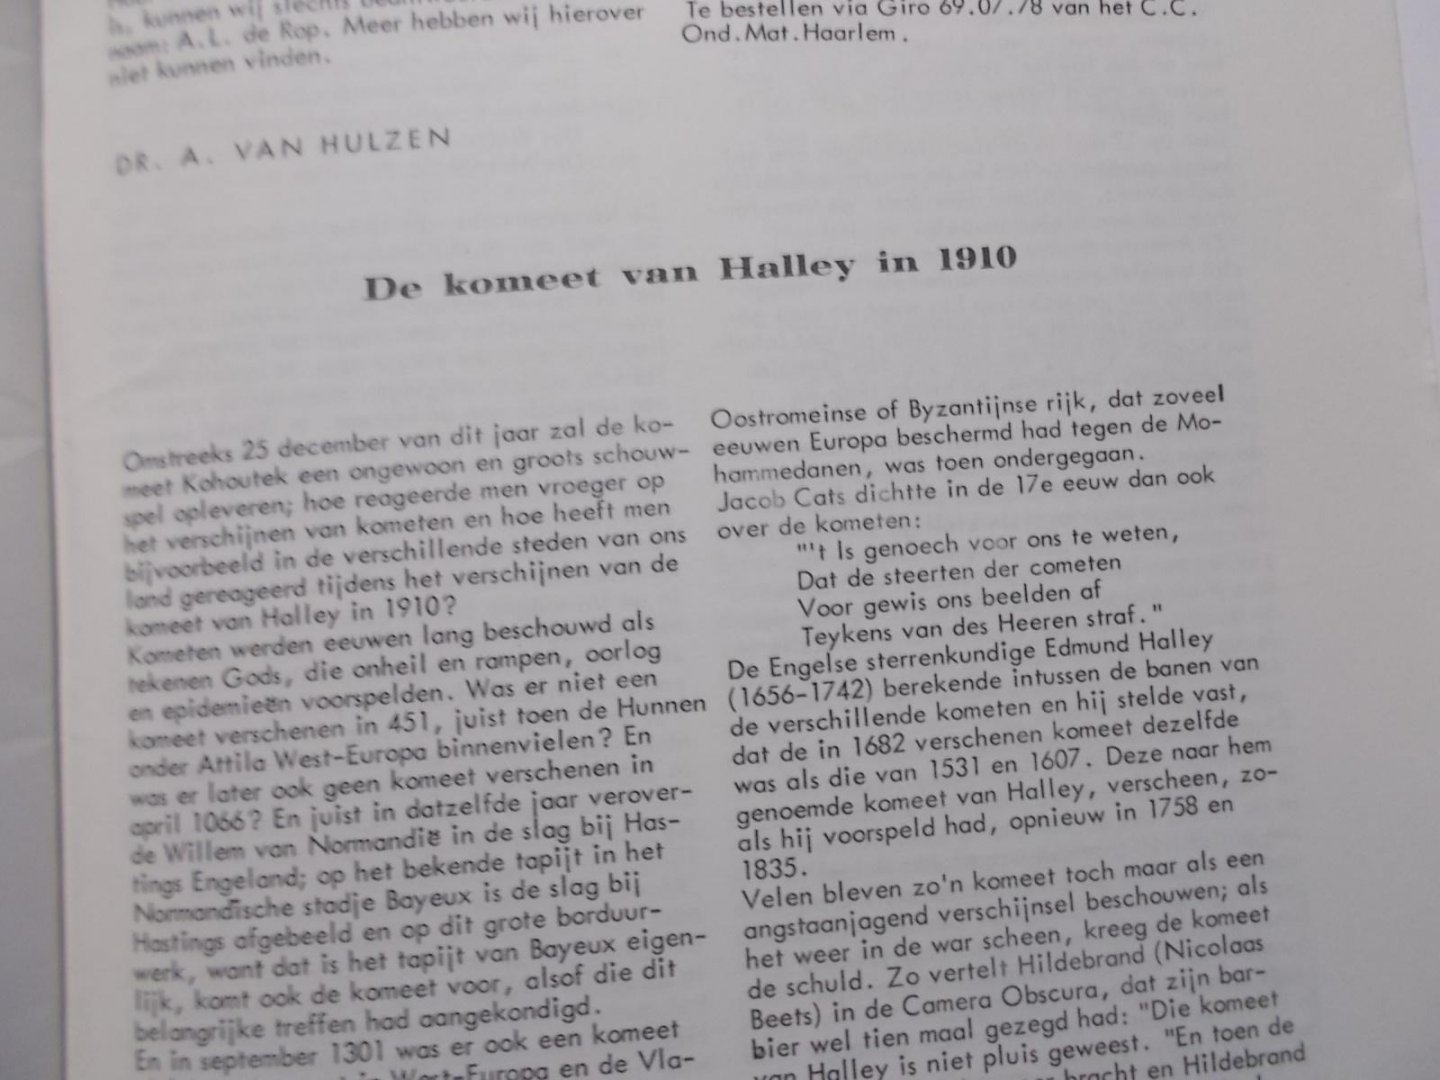 Hulzen, Dr. A. van - De komeet van HALLEY in 1910